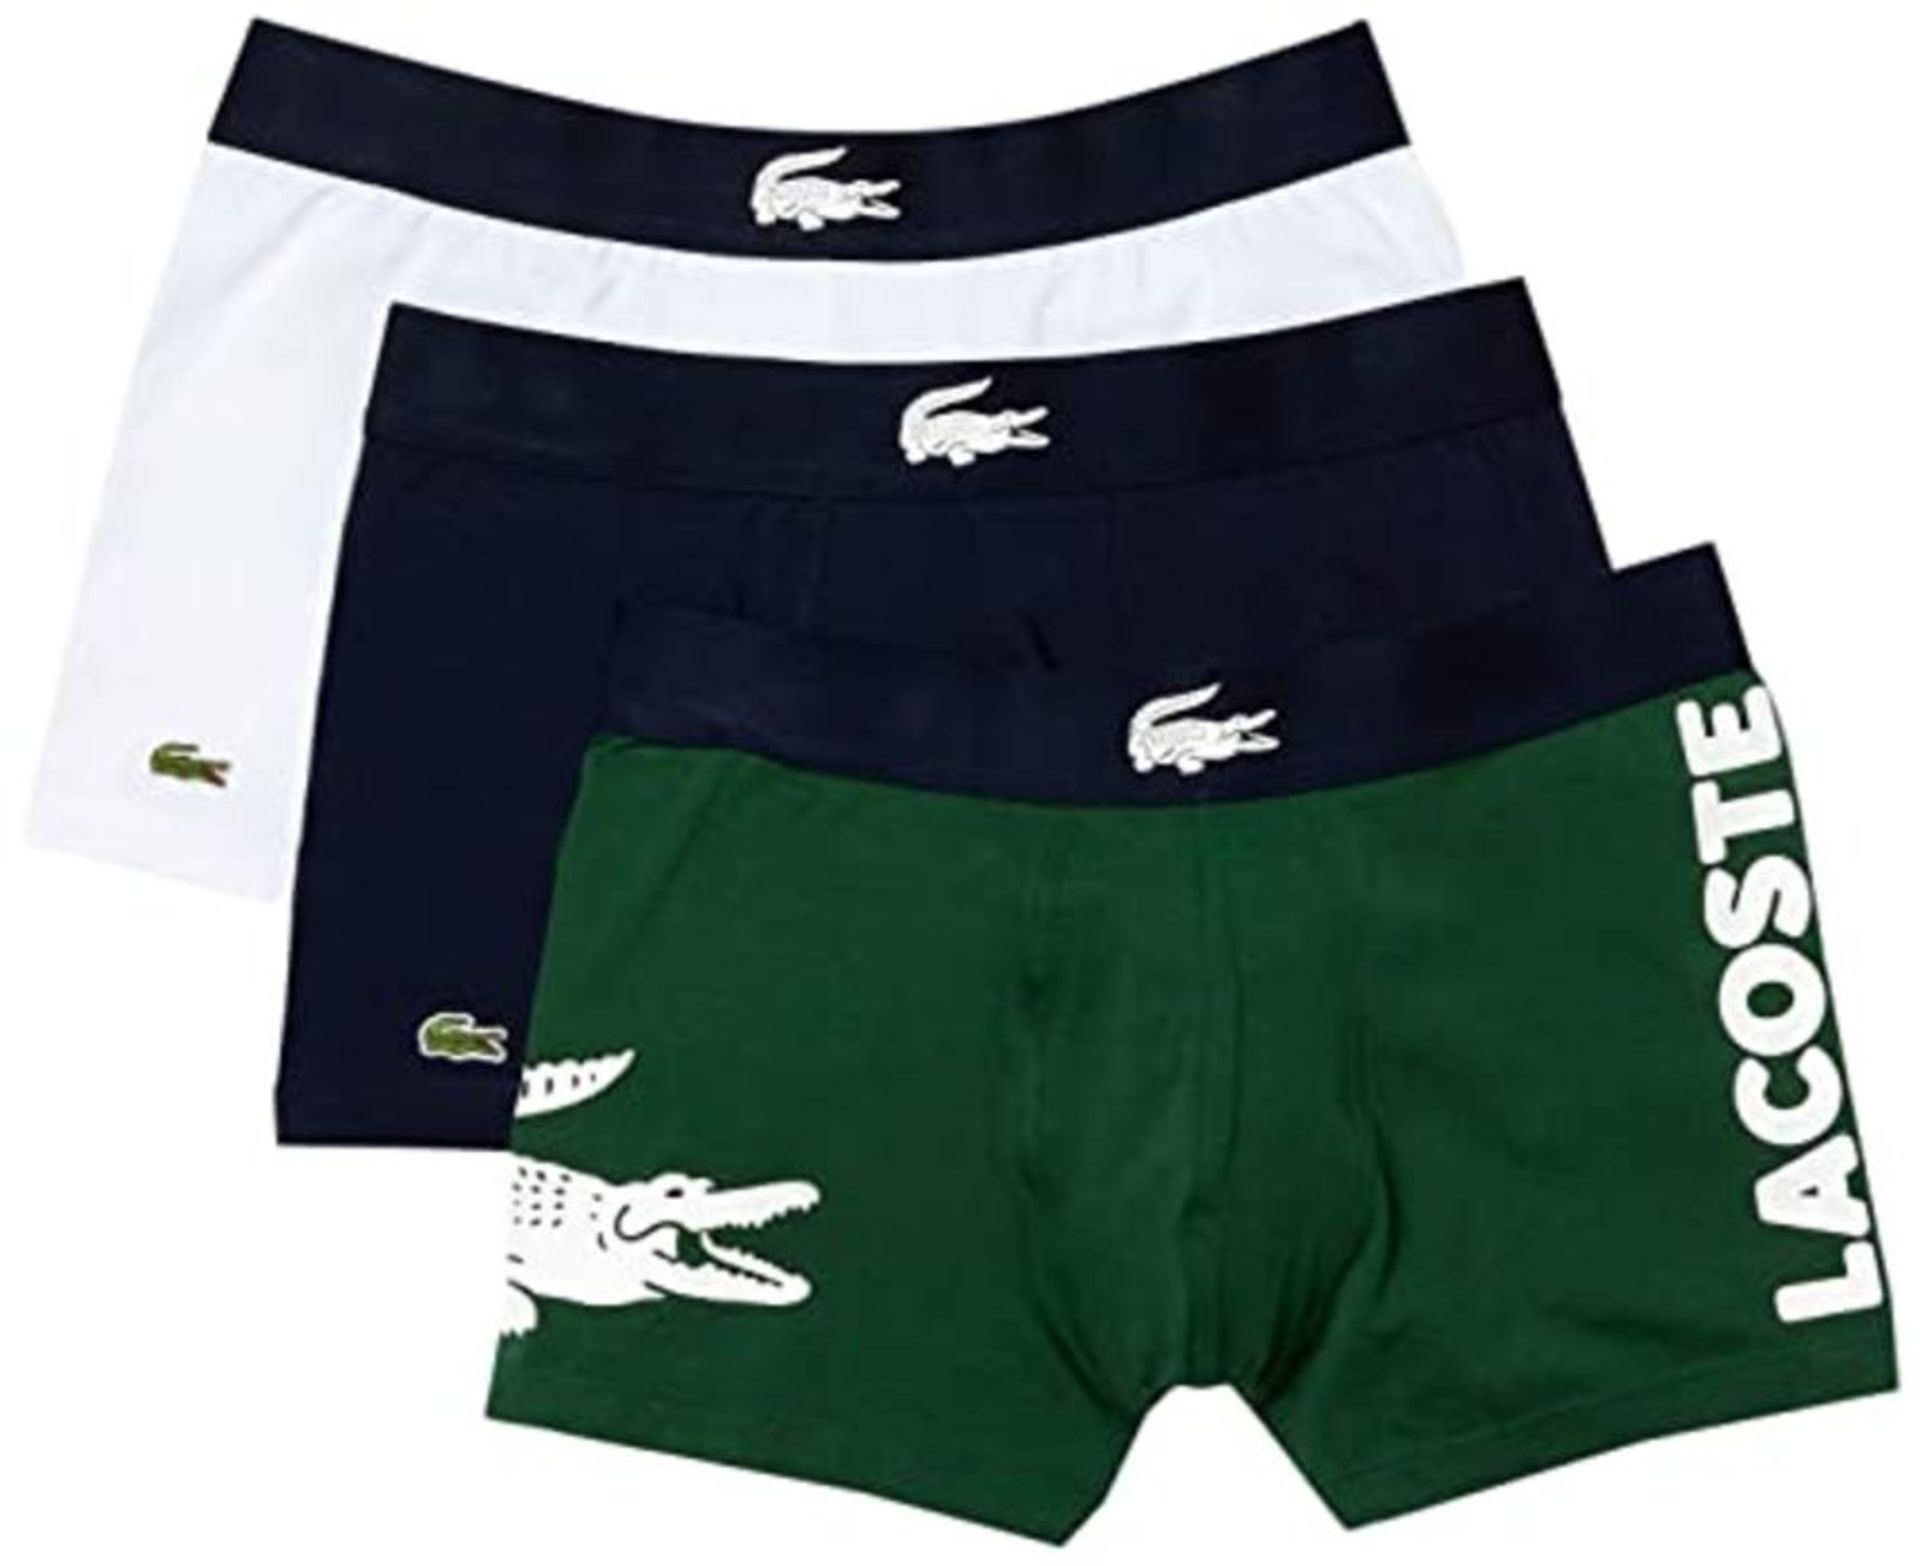 Lacoste Men's 5H1803 Underwear, Thym/Marine-Blanc, M (Pack of 3)